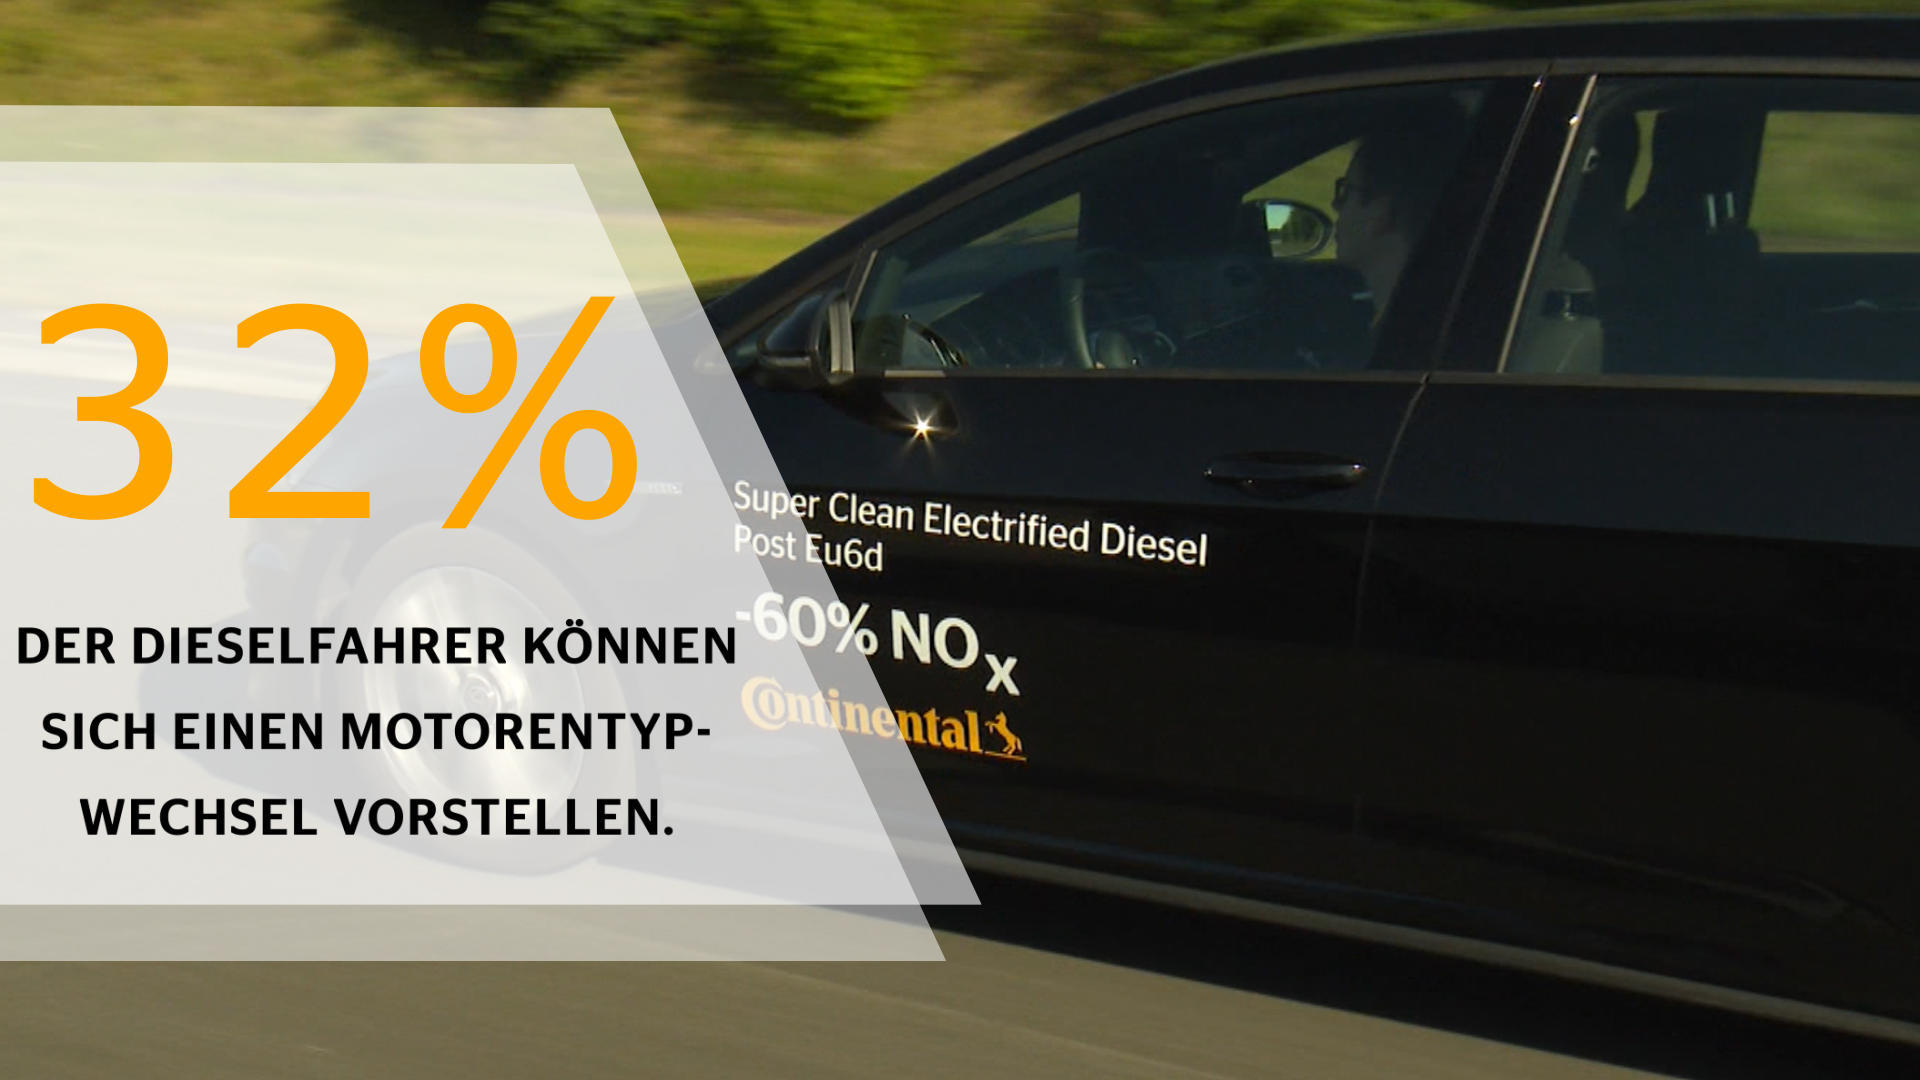 Ein Drittel der Dieselfahrer in Deutschland kann sich den Wechsel auf einen anderen Motorentyp vorstellen. Foto: Continental AG